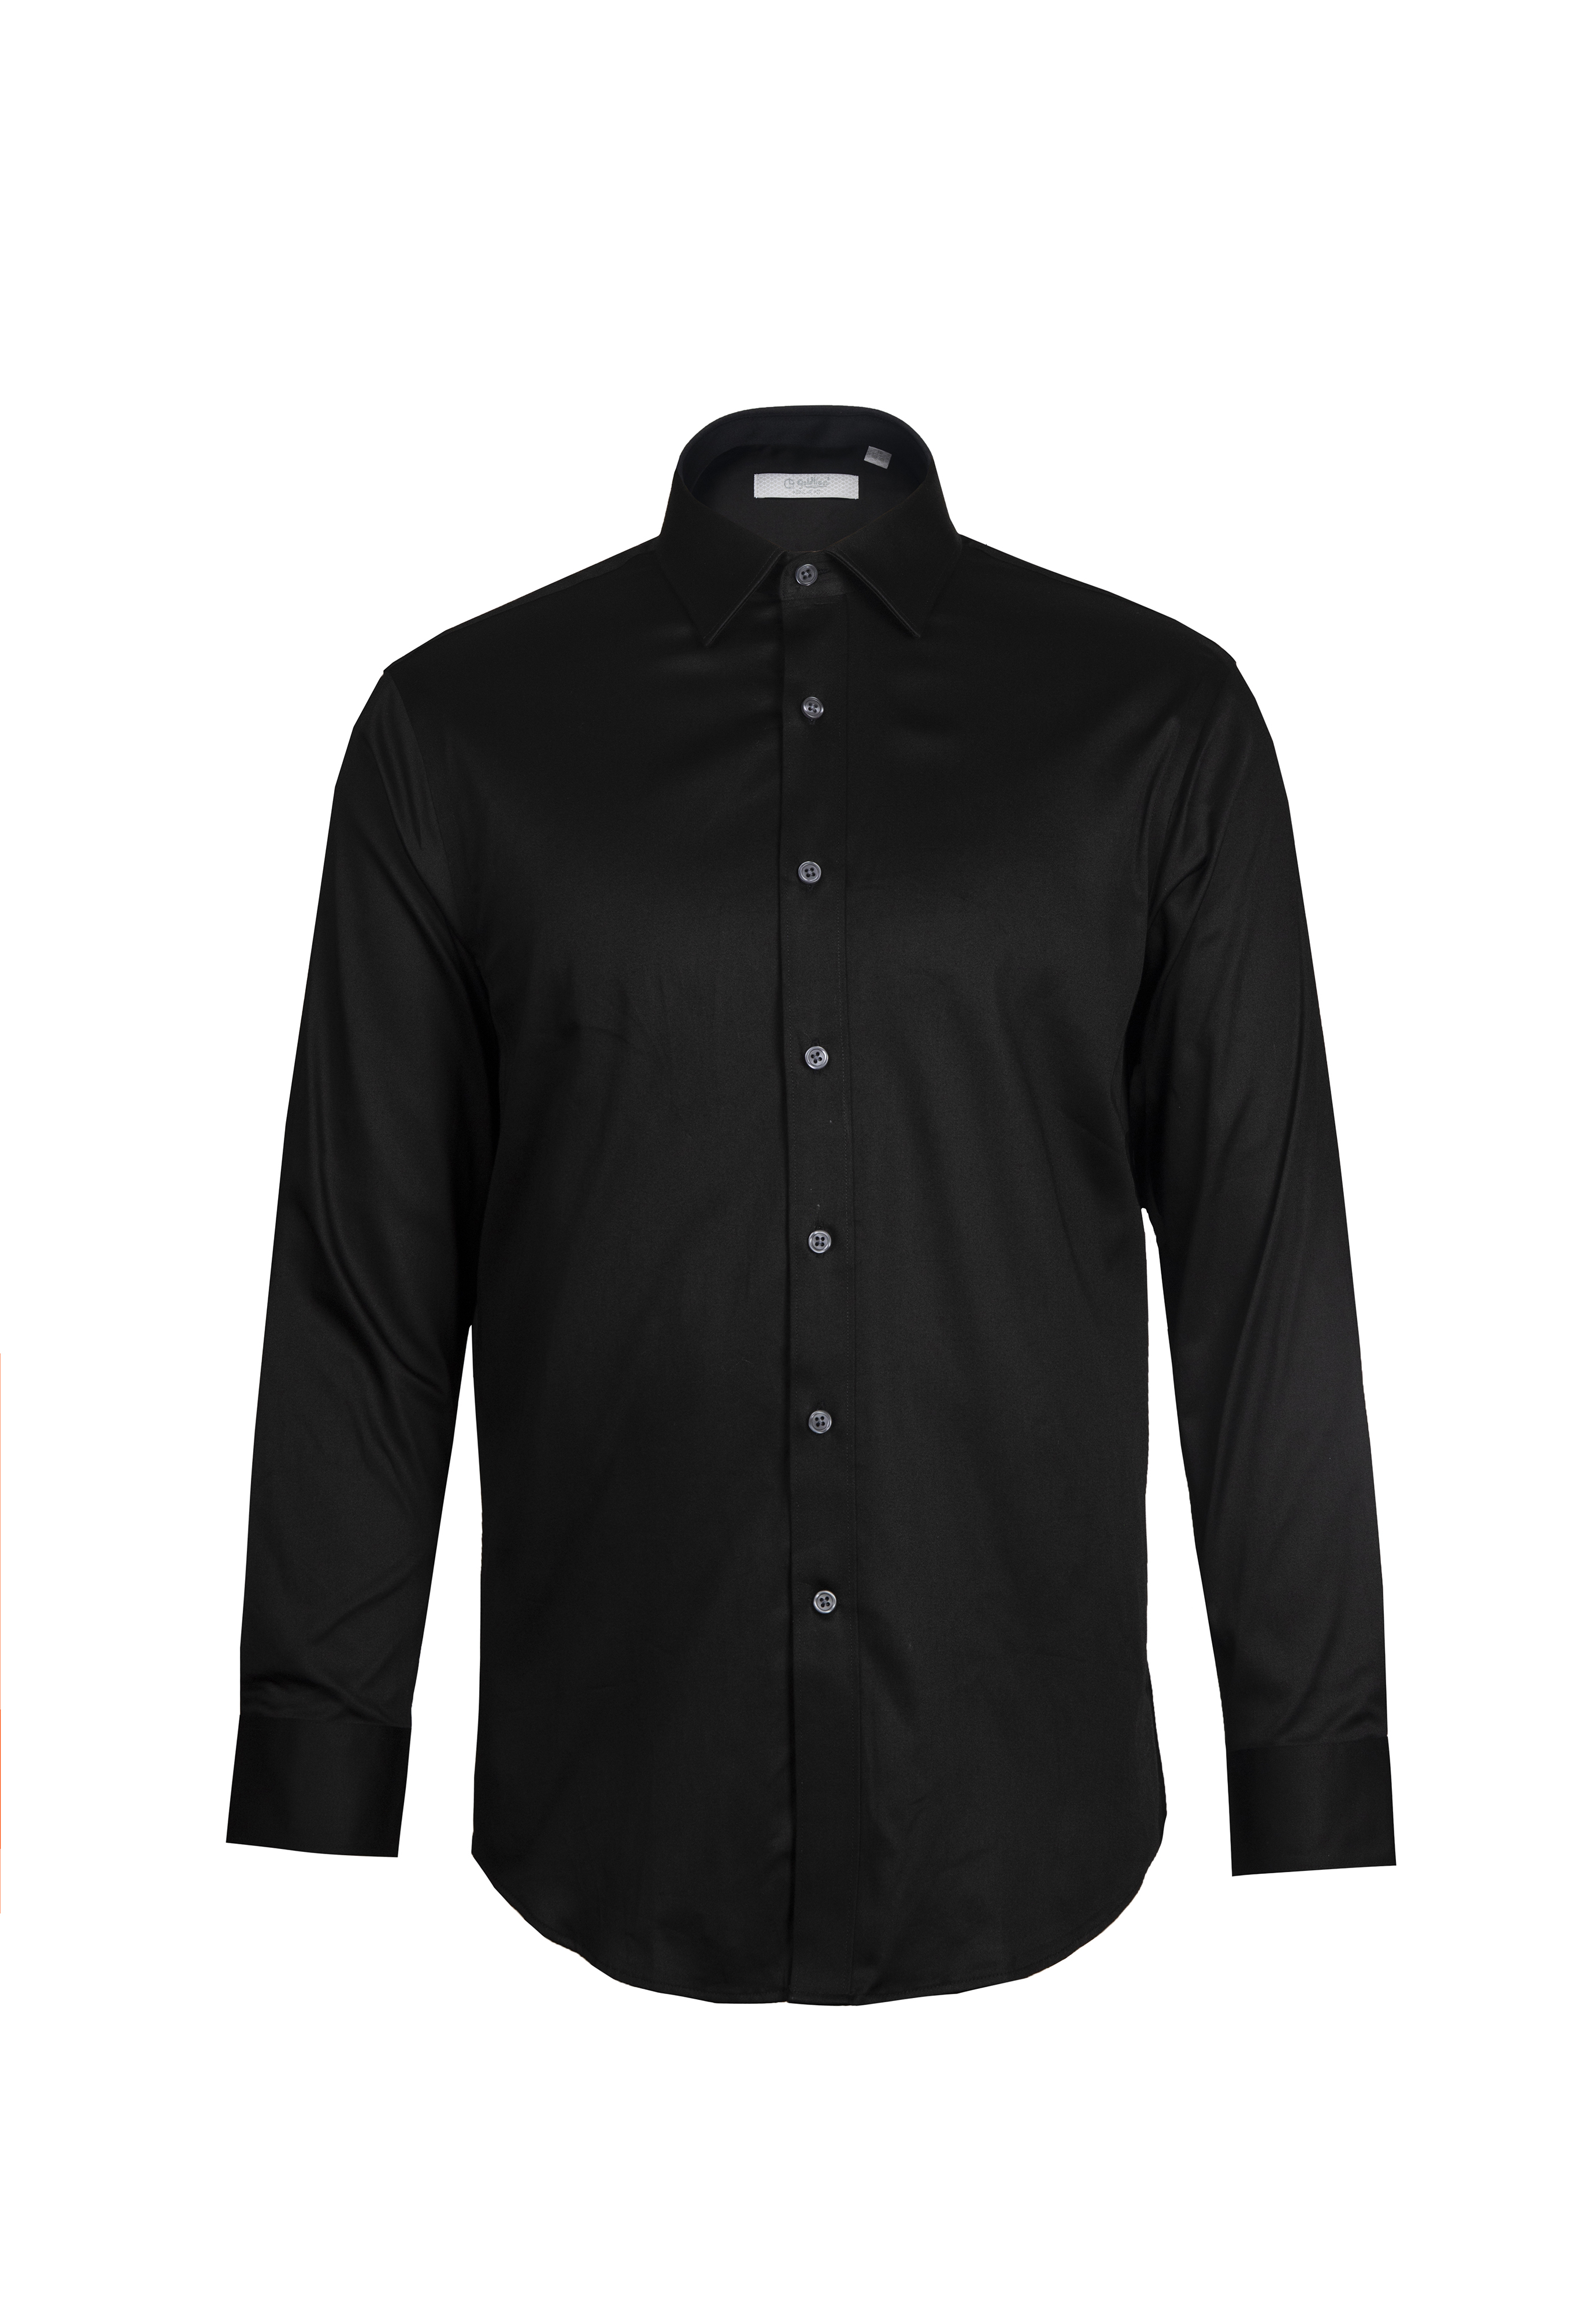 [Online Exclusive] Goldlion Business Regular Fit Long-Sleeved Shirt (Black)